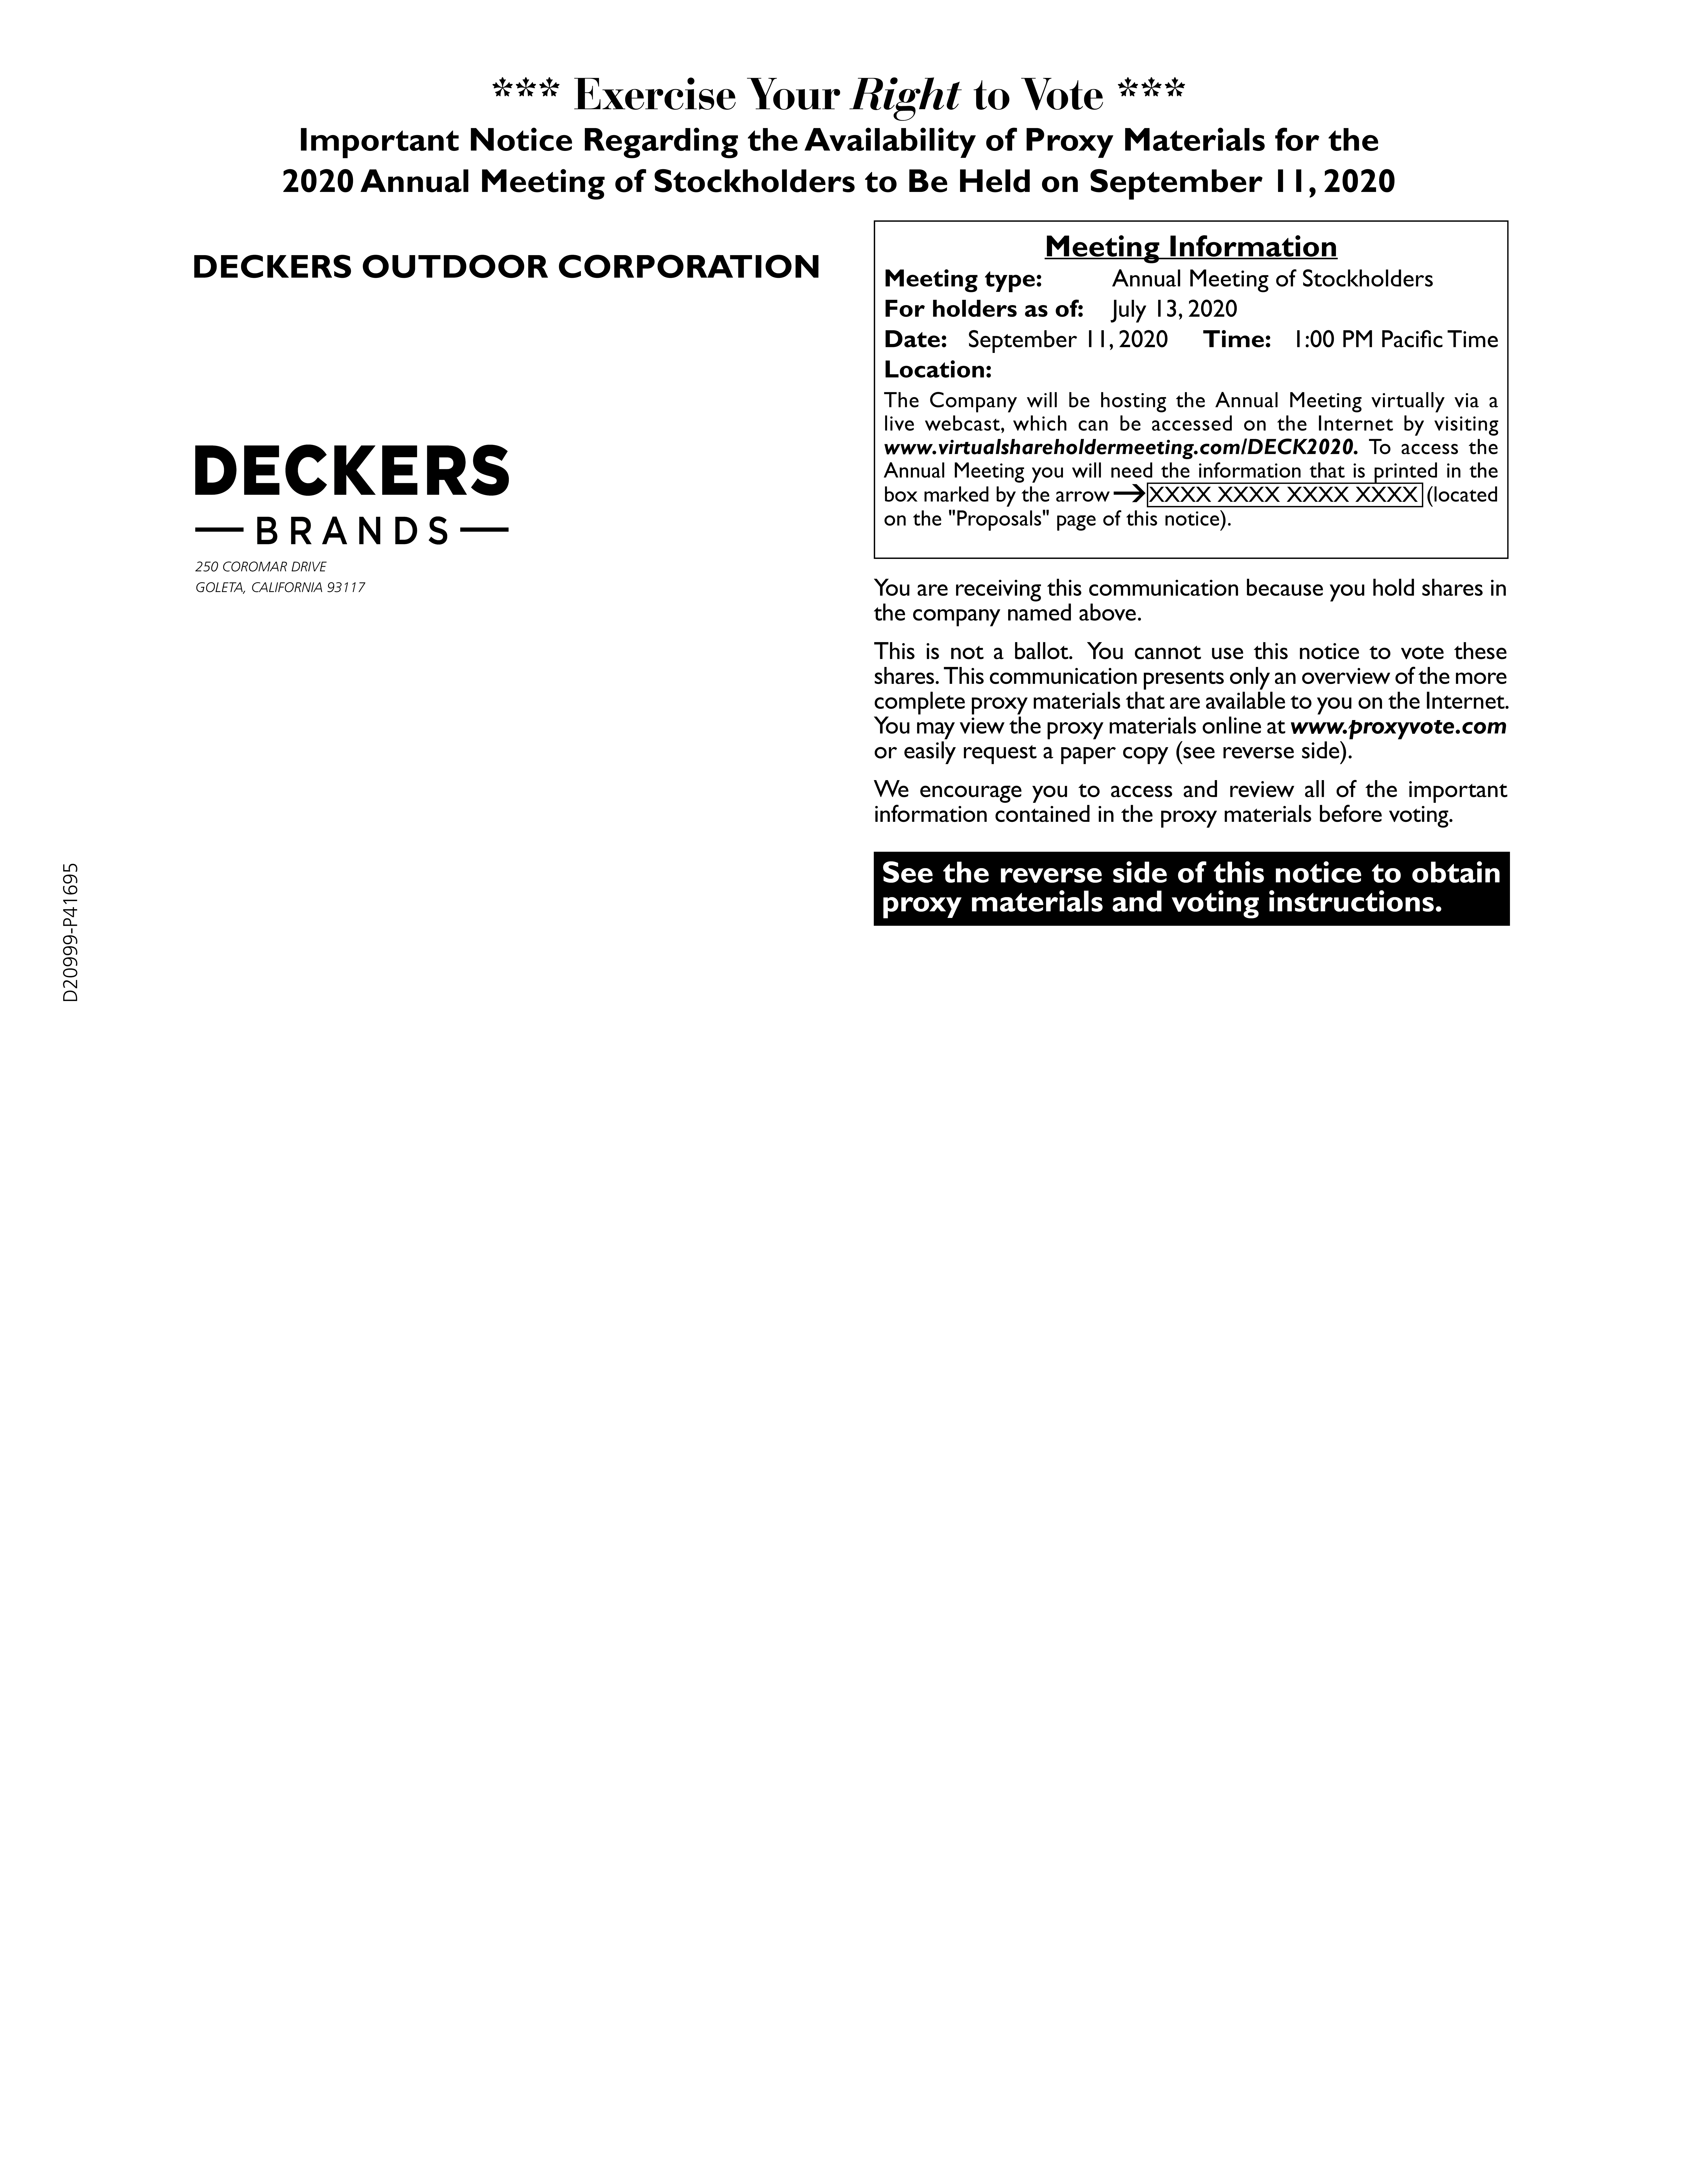 deckproxynoticefinalpage01.jpg